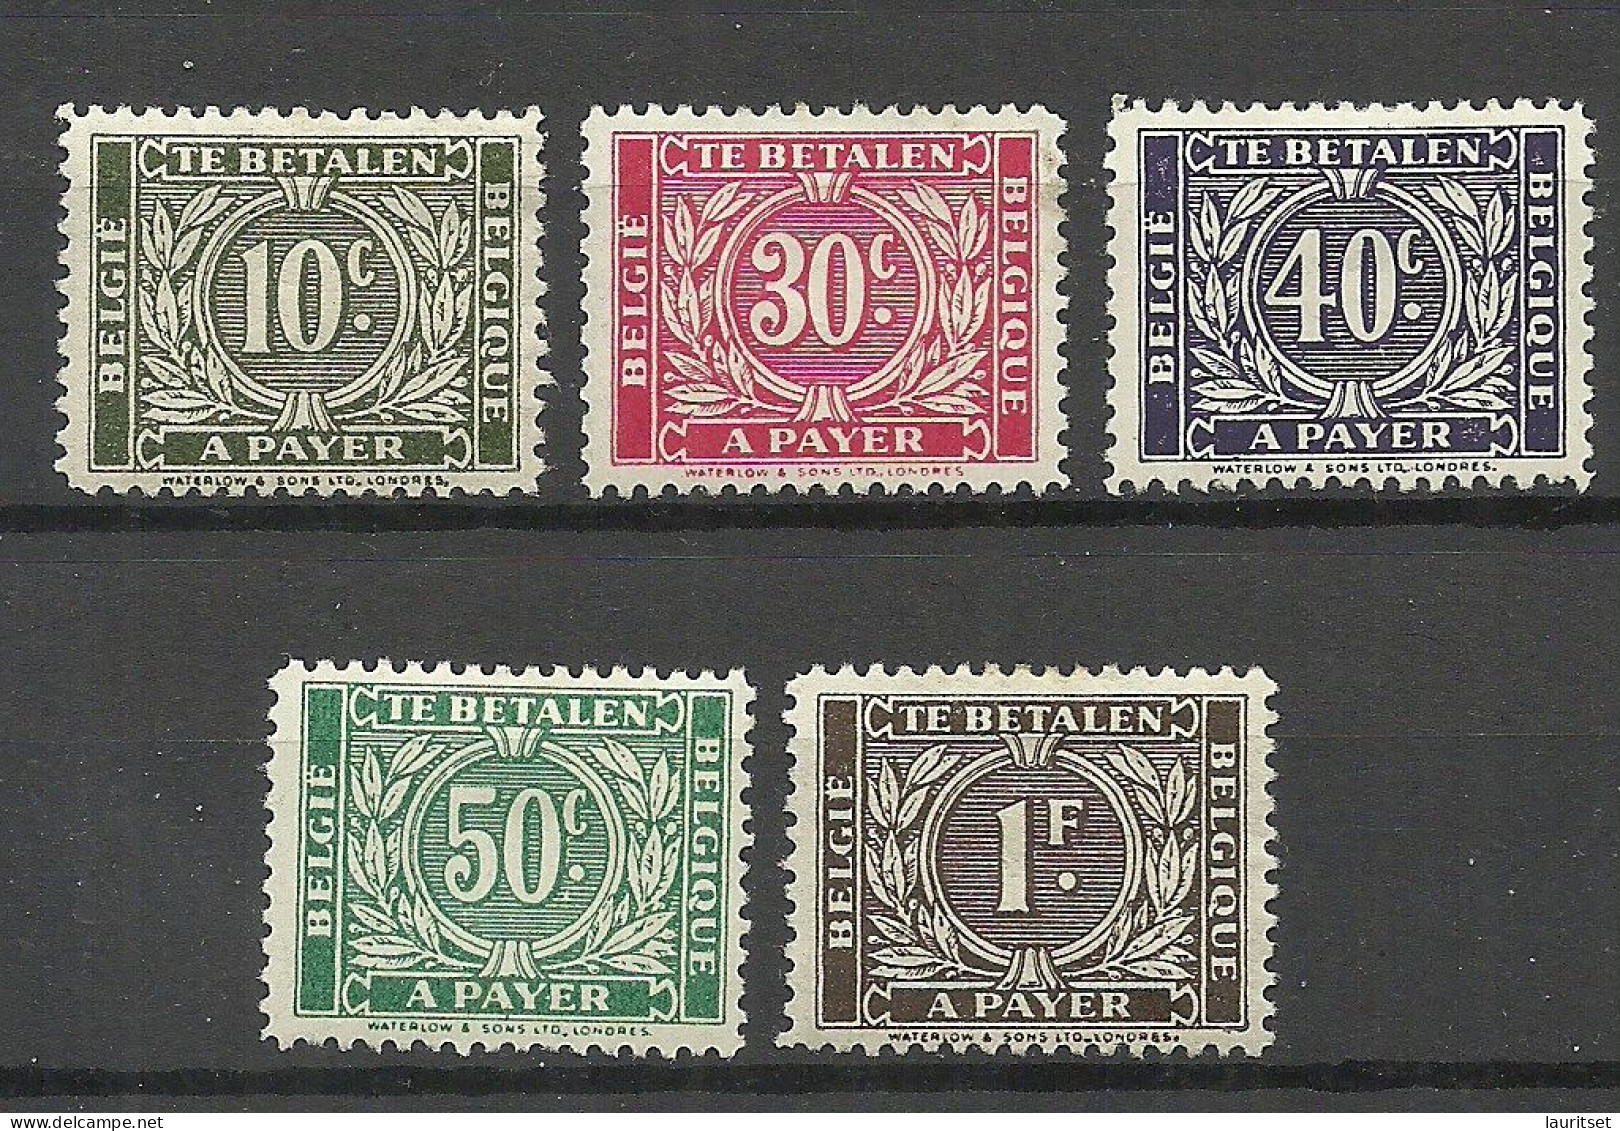 BELGIEN Belgium Belgique 1945 =5 Values From Set Michel 49 - 45 A Payer Te Betalen Portomarken Postage Due * - Briefmarken